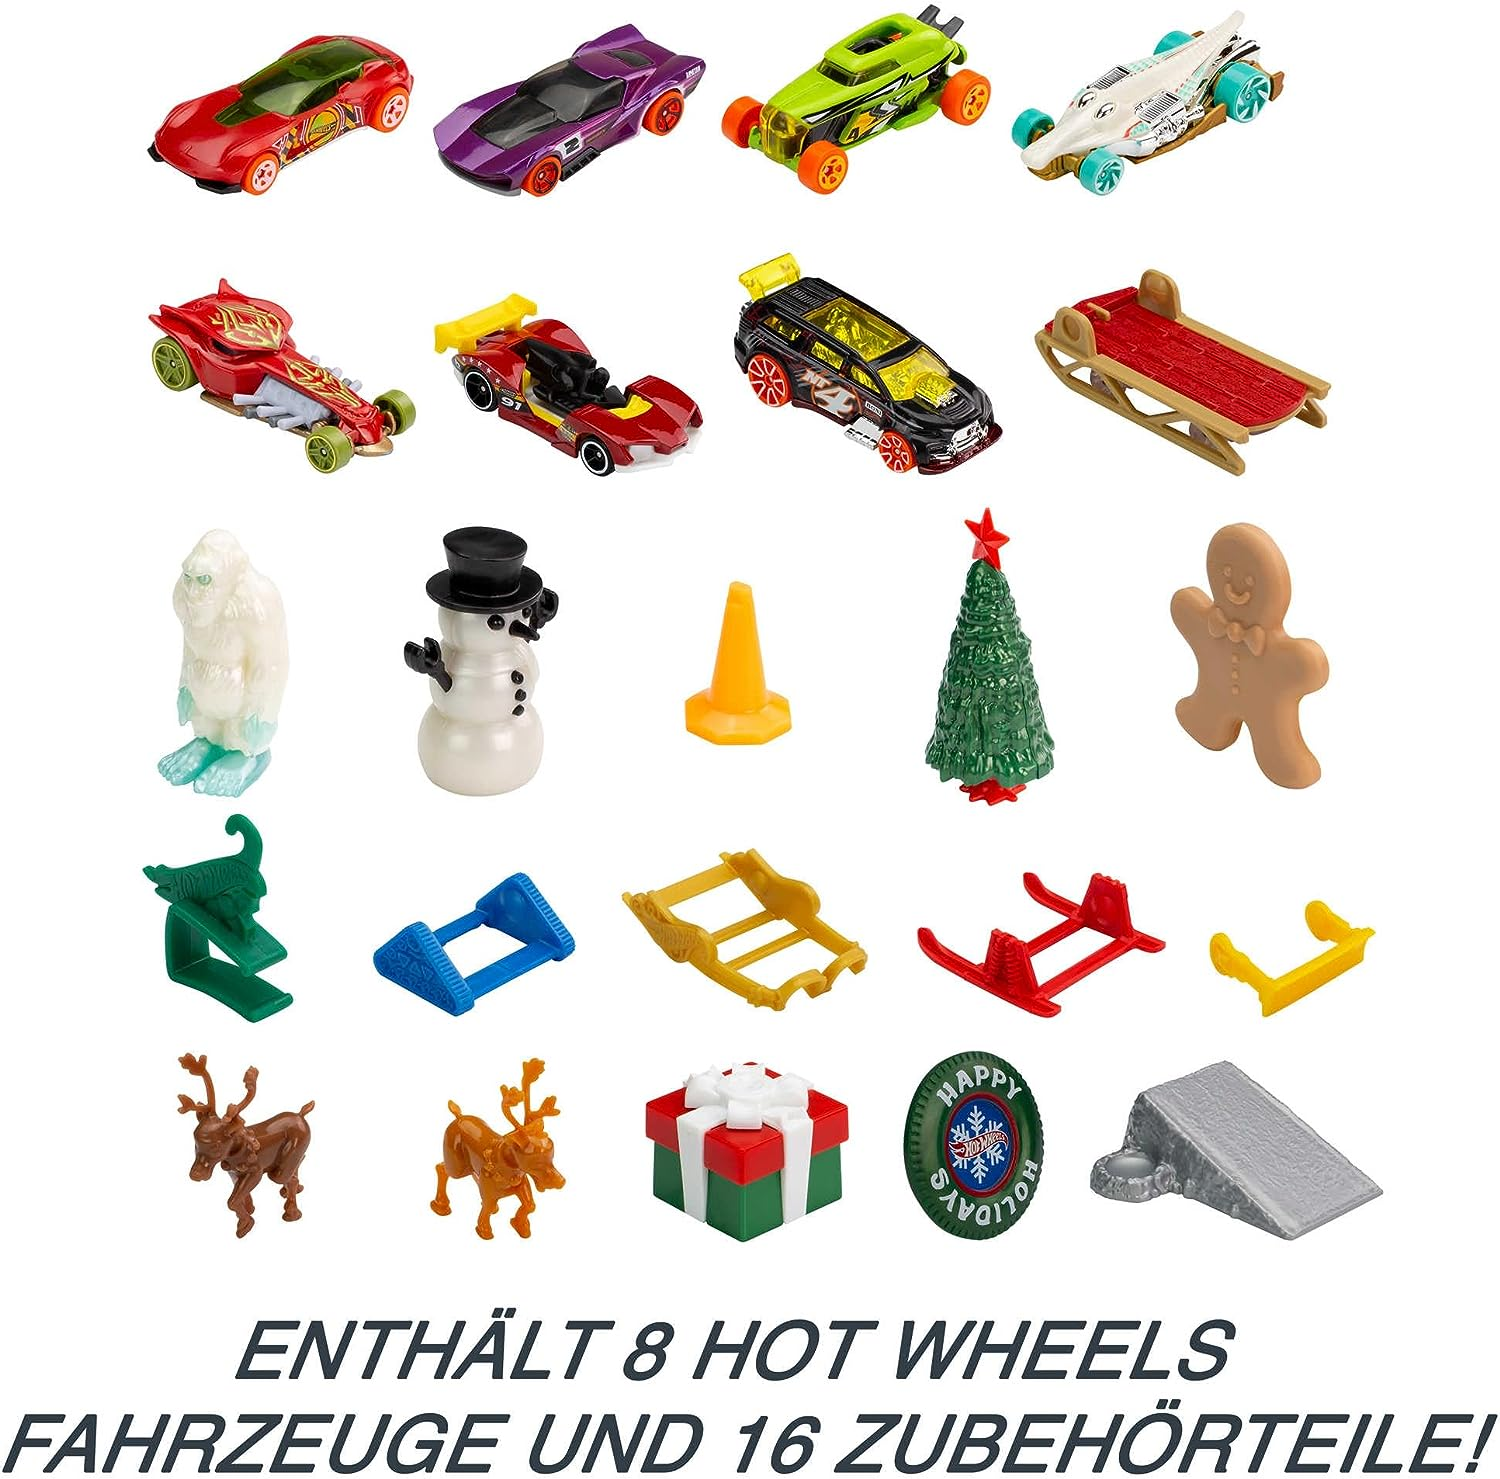 Hot Wheels Adventskalender, 8 Hot Wheels Spielzeugautos mit Feiertagsmotiven und diversem Zubehör mit Spielmatte, Geschenk & Spielzeug für Kinder ab 3 Jahren, HCW15 - Inhalt